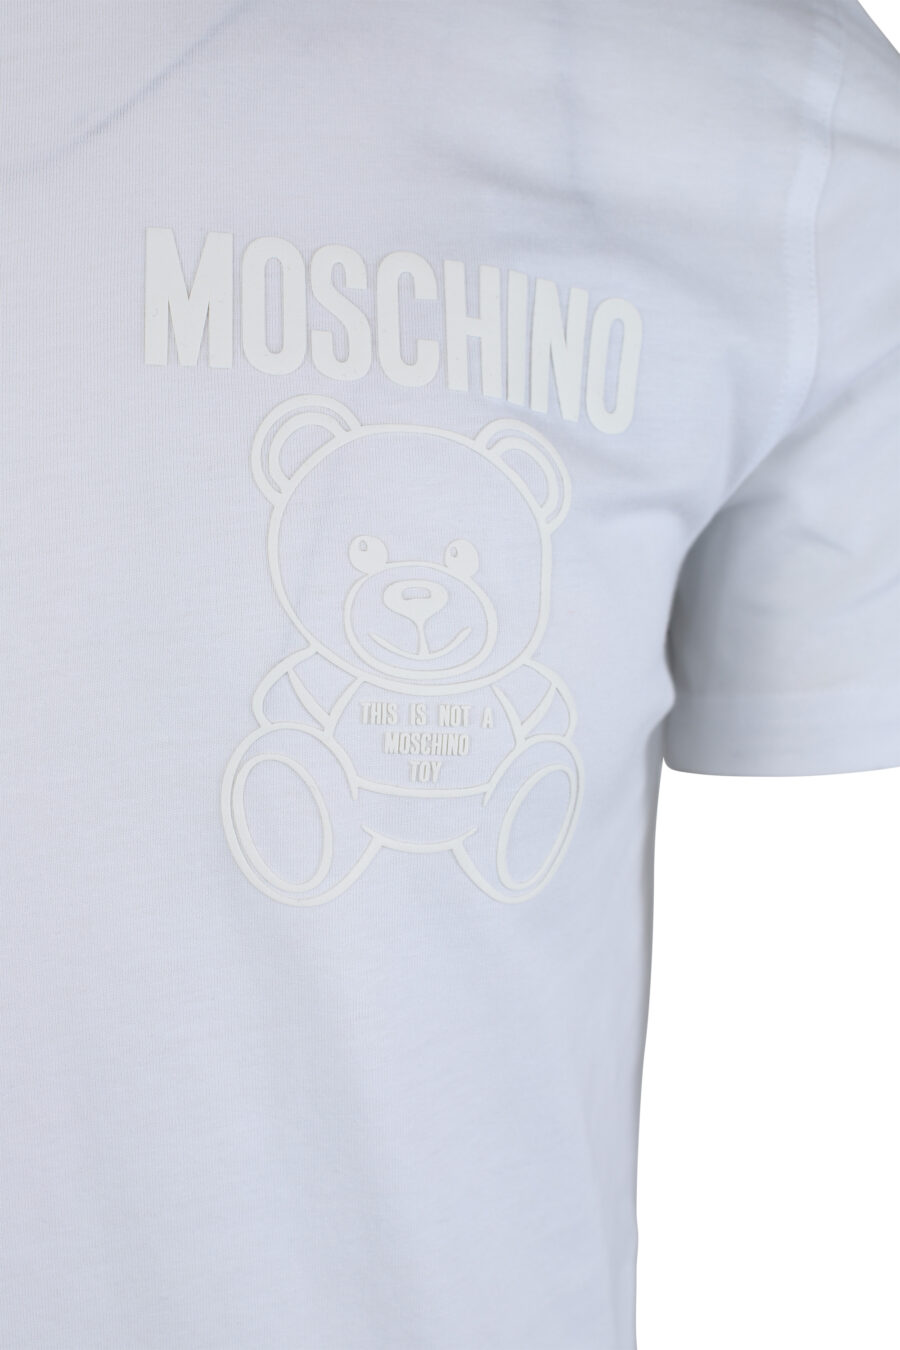 Camiseta blanca con minilogo oso monocromático - IMG 1652